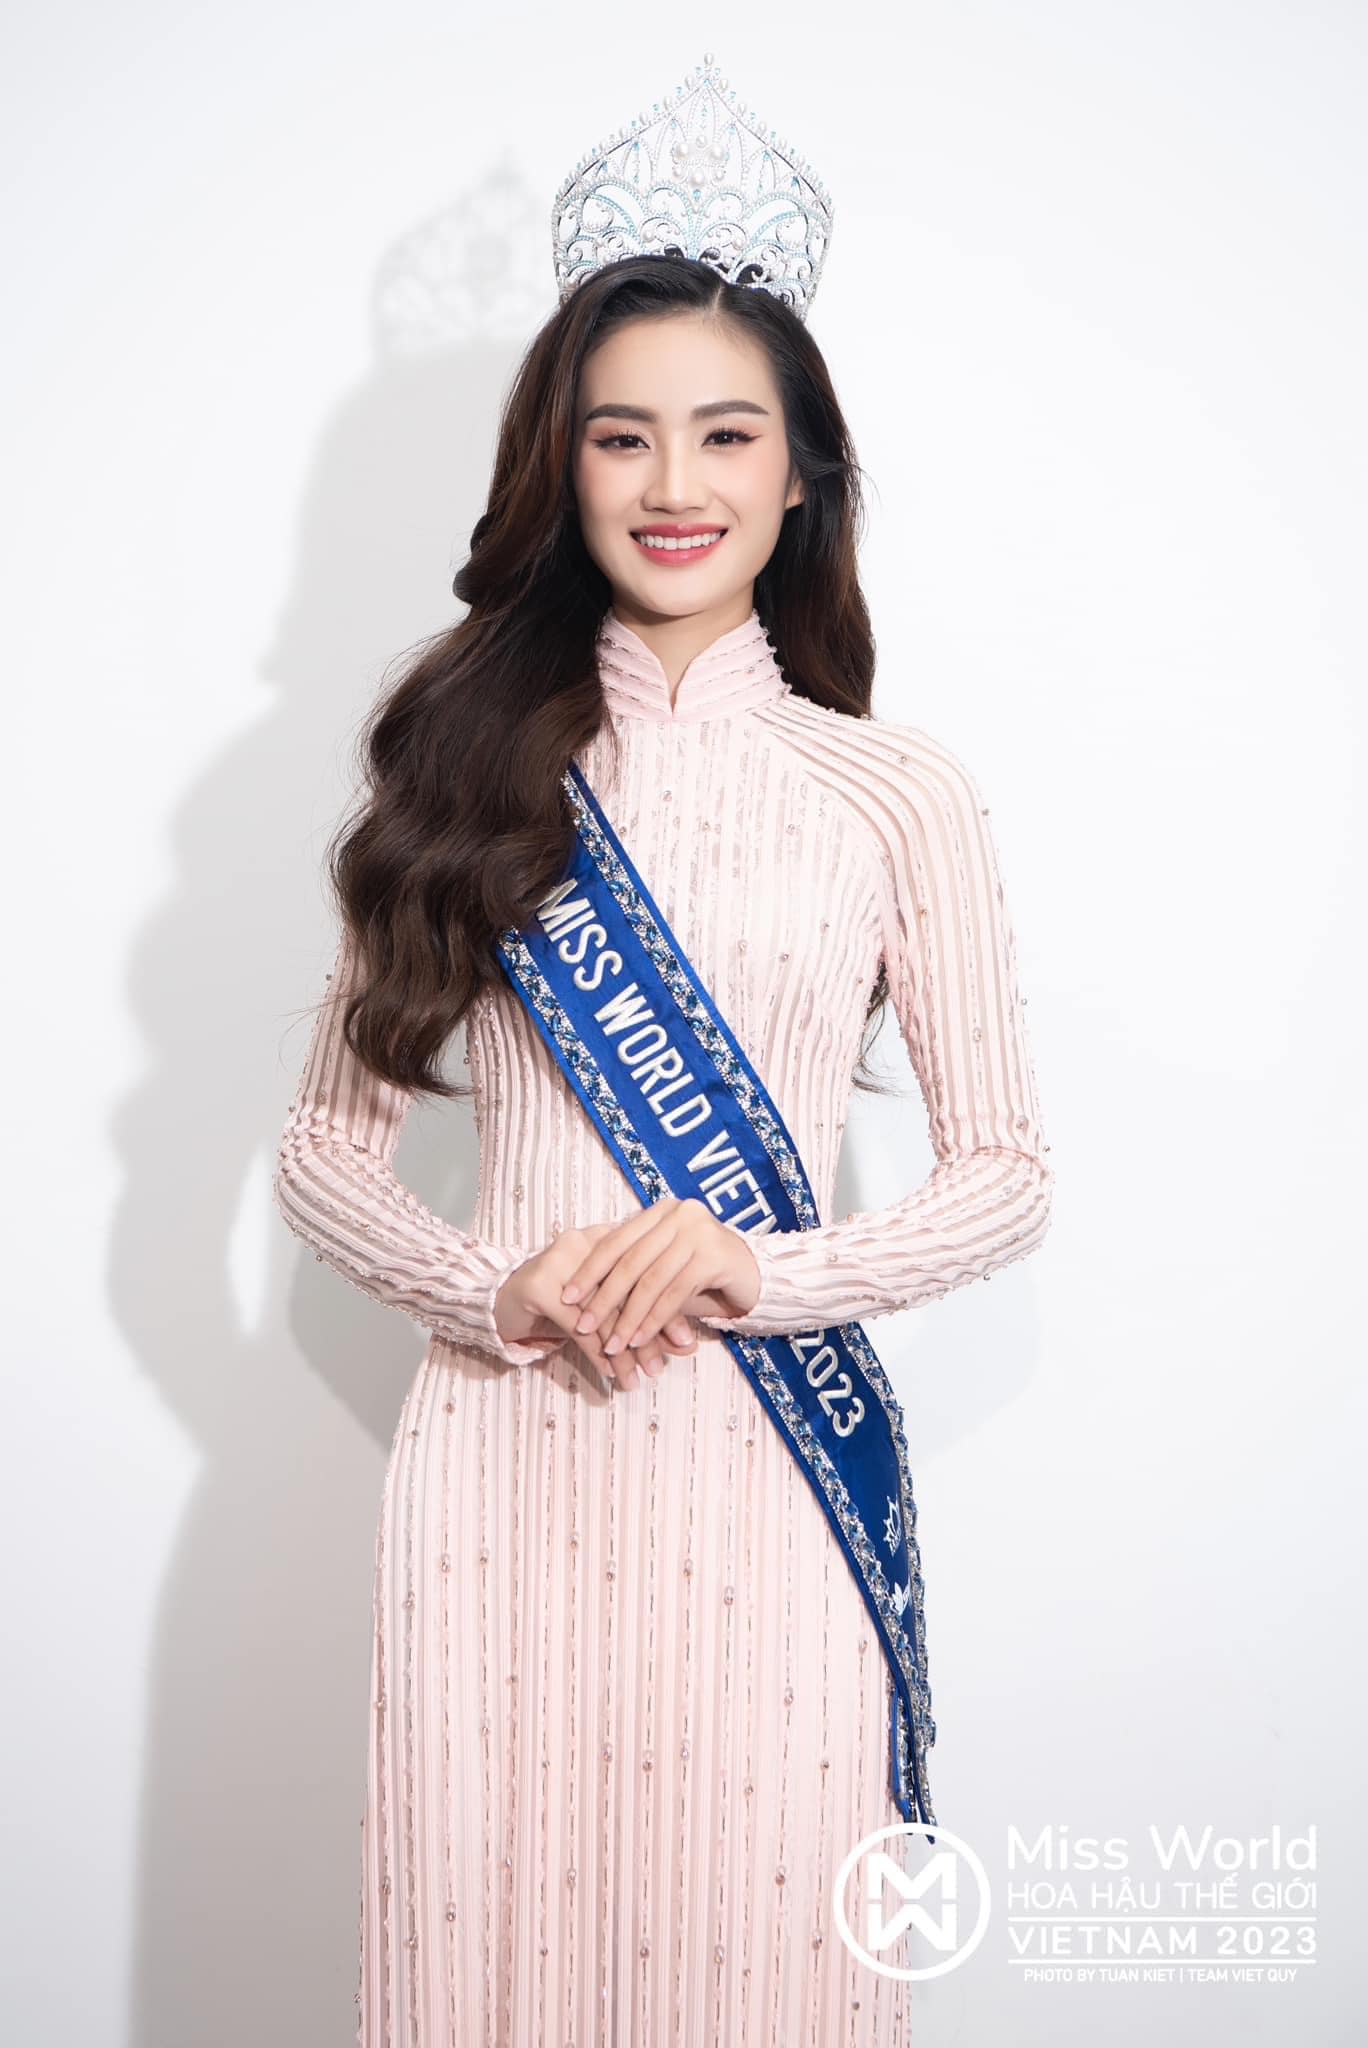 Tân Miss World Vietnam 2023 bị đề nghị tước bỏ danh hiệu chỉ sau 1 tuần đăng quang, chuyện gì đây?-2